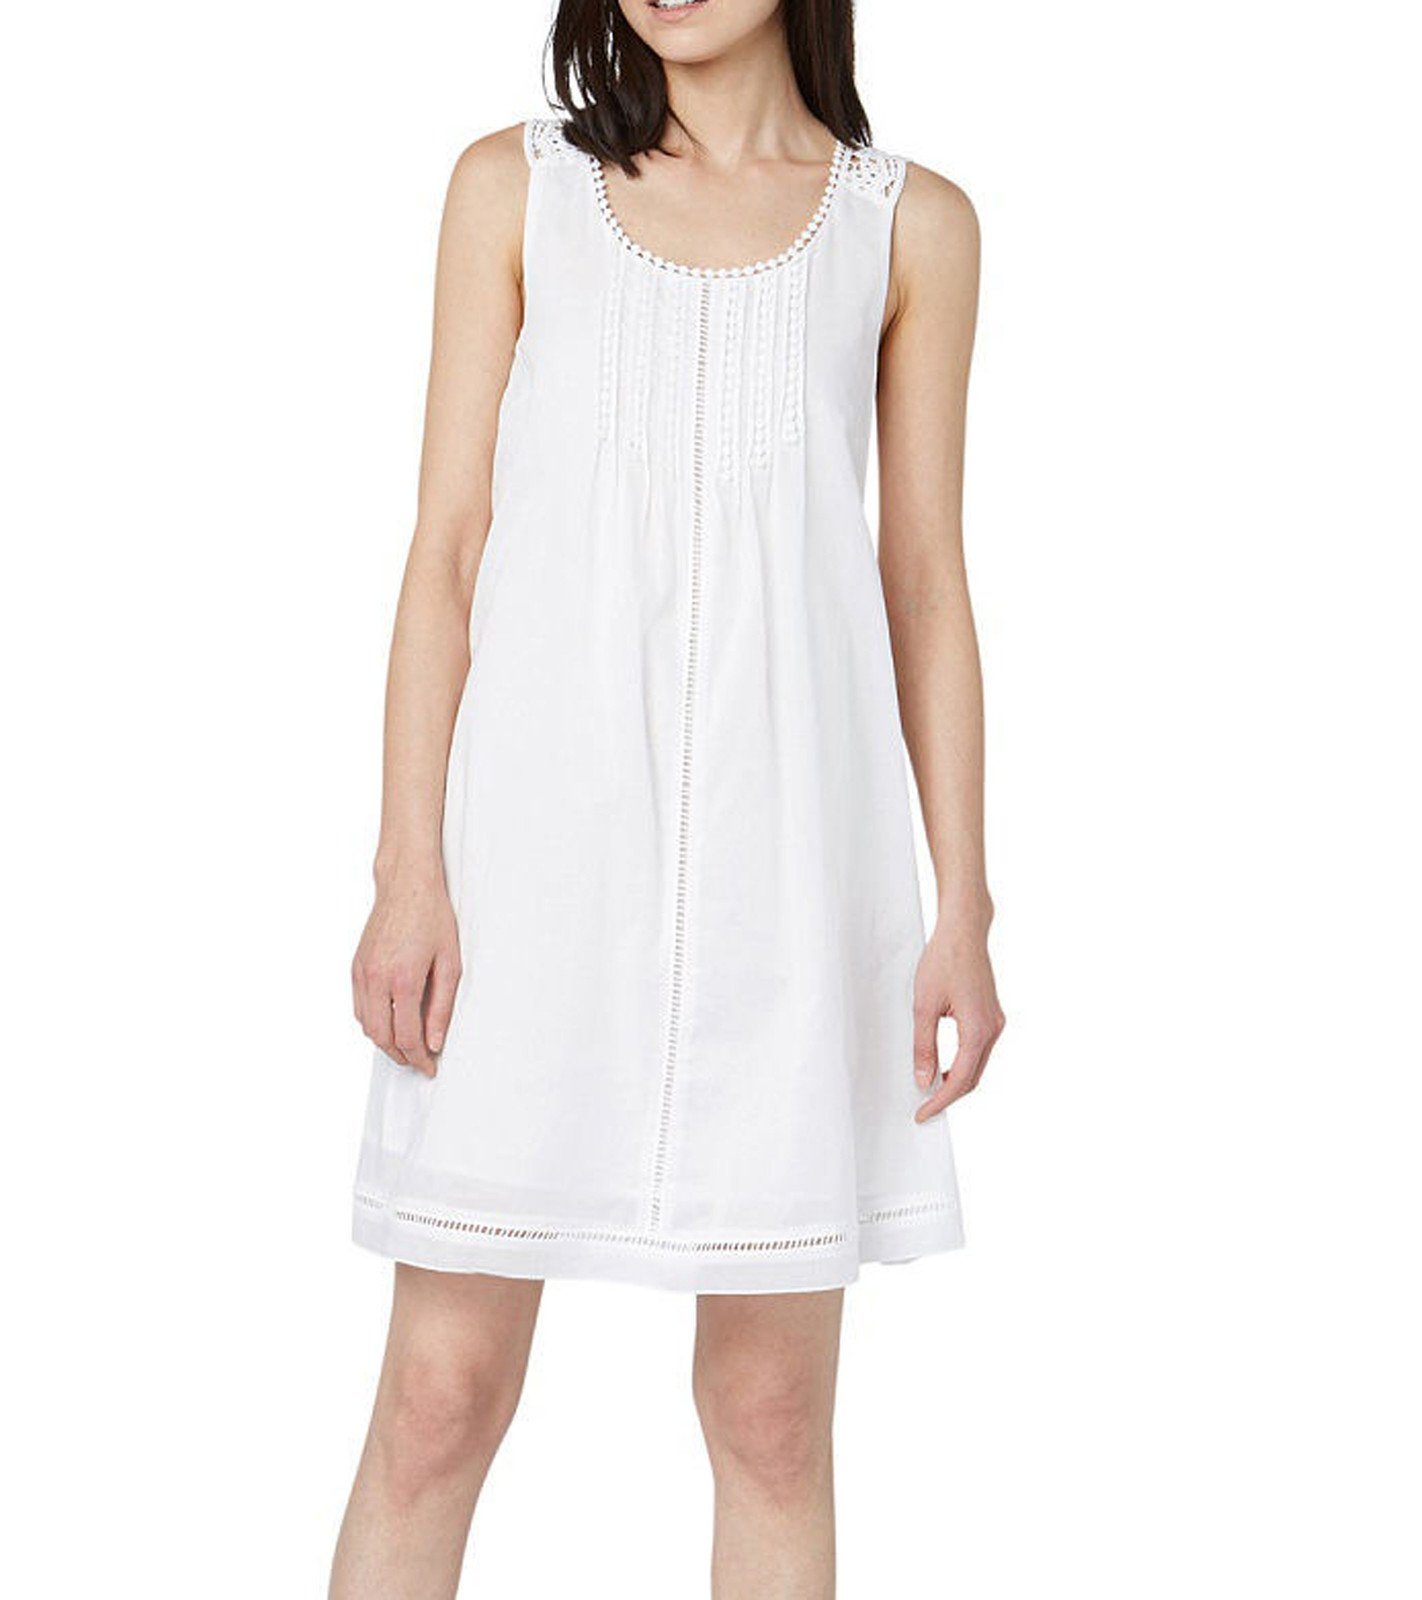 TOM TAILOR Minikleid »TOM TAILOR Mini-Kleid sommerliches Damen Freizeit- Kleid mit gehäkelten Details Sommer-Kleid Weiß« online kaufen | OTTO